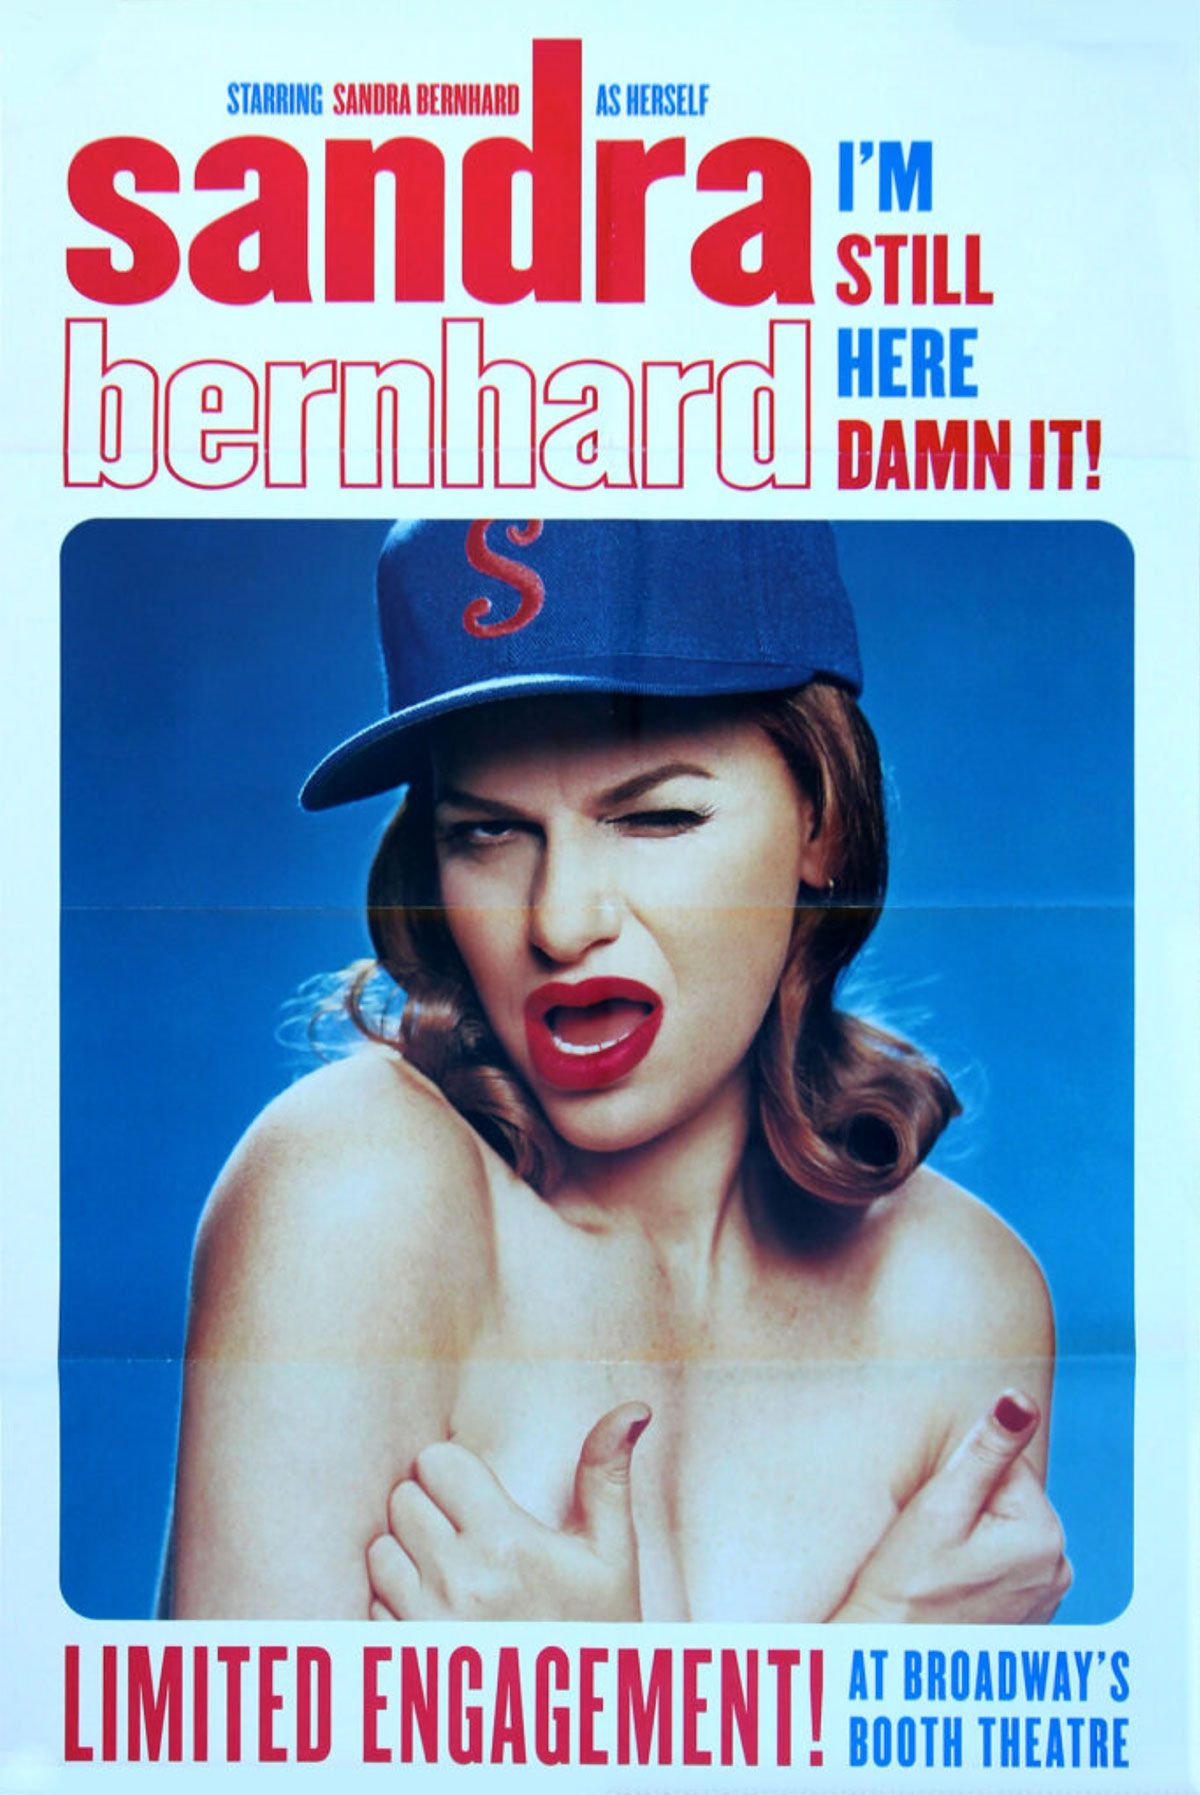 Sandra Bernhard Poster for "I'm Still Here Damn It!